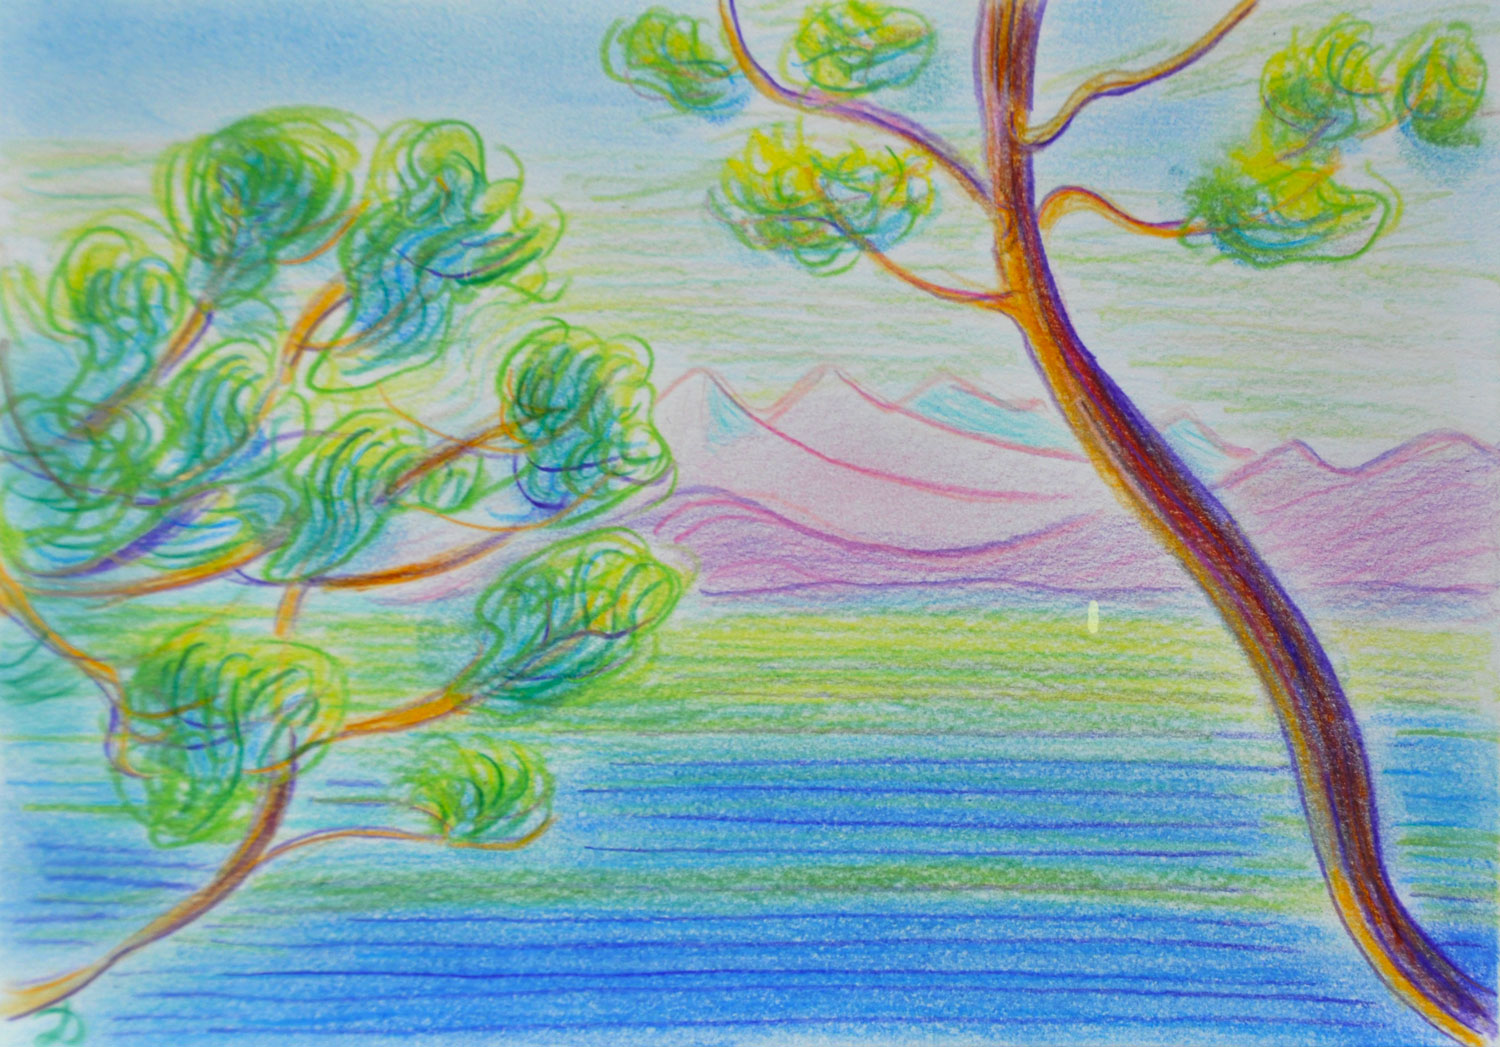 Lac Léman, Montreux, 1. Crayon de couleur et pastel sur papier, 15x21, 2022